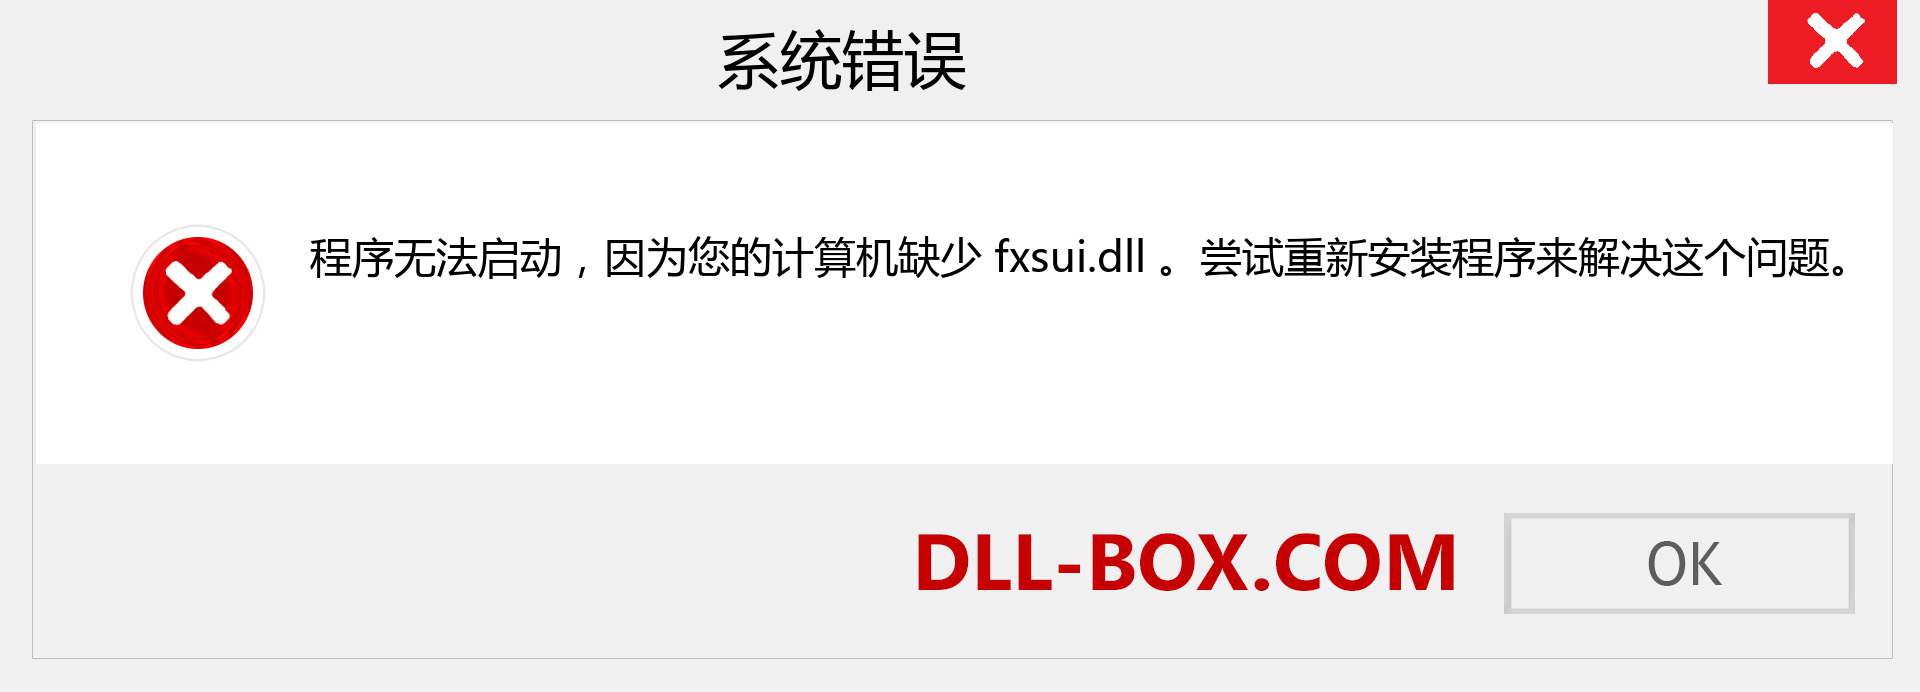 fxsui.dll 文件丢失？。 适用于 Windows 7、8、10 的下载 - 修复 Windows、照片、图像上的 fxsui dll 丢失错误